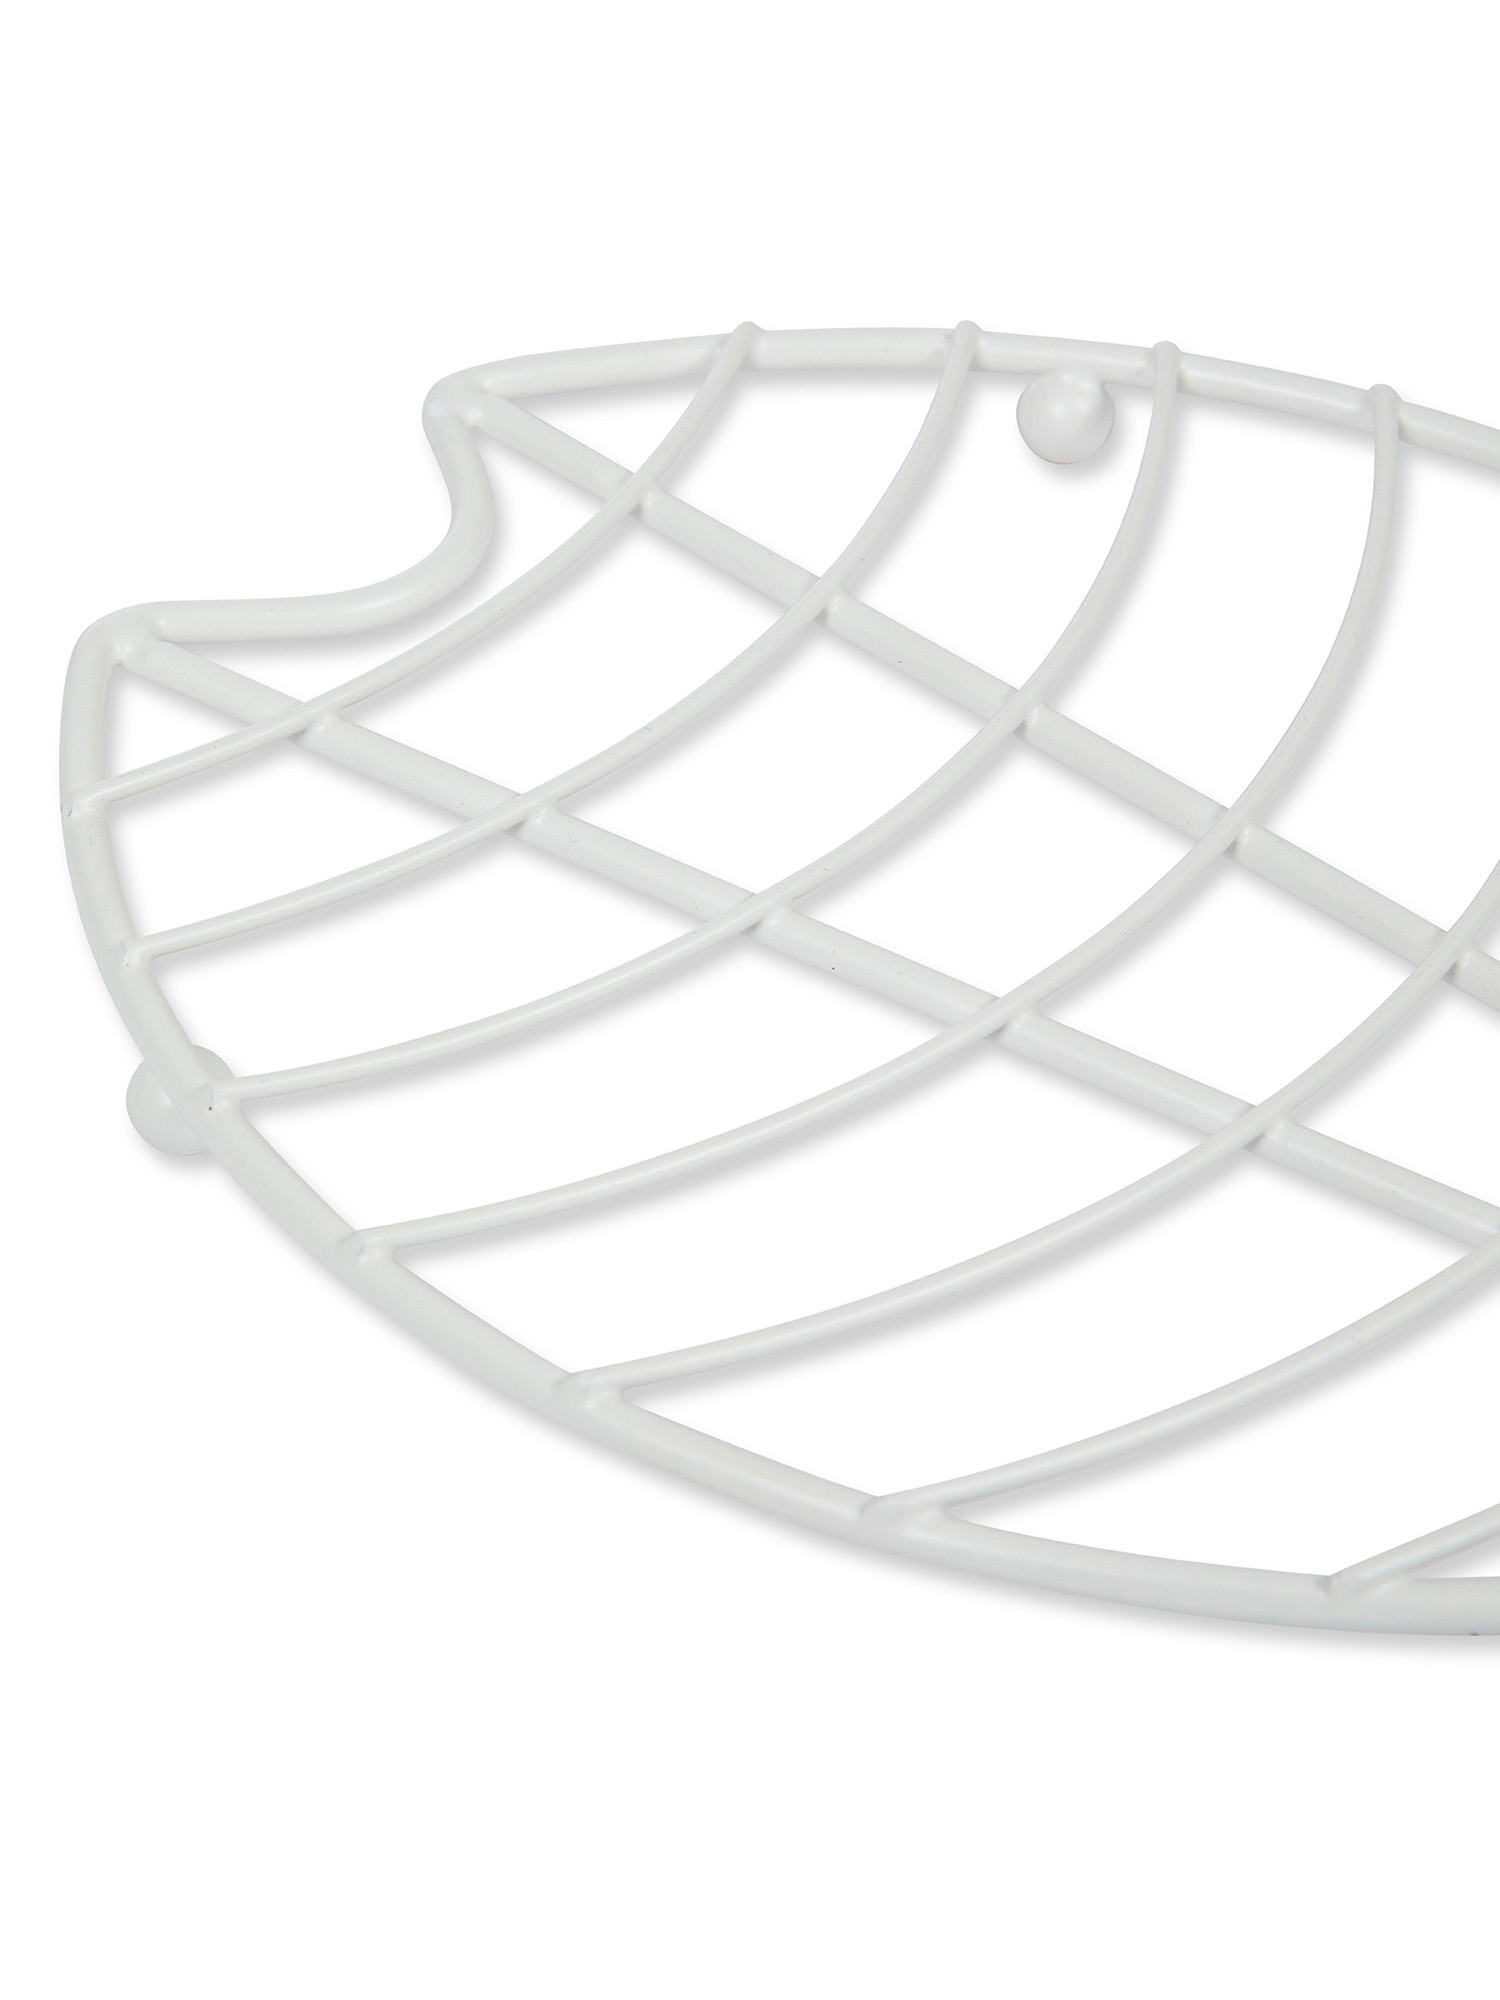 Sottopentola filo bianco, Bianco, large image number 1